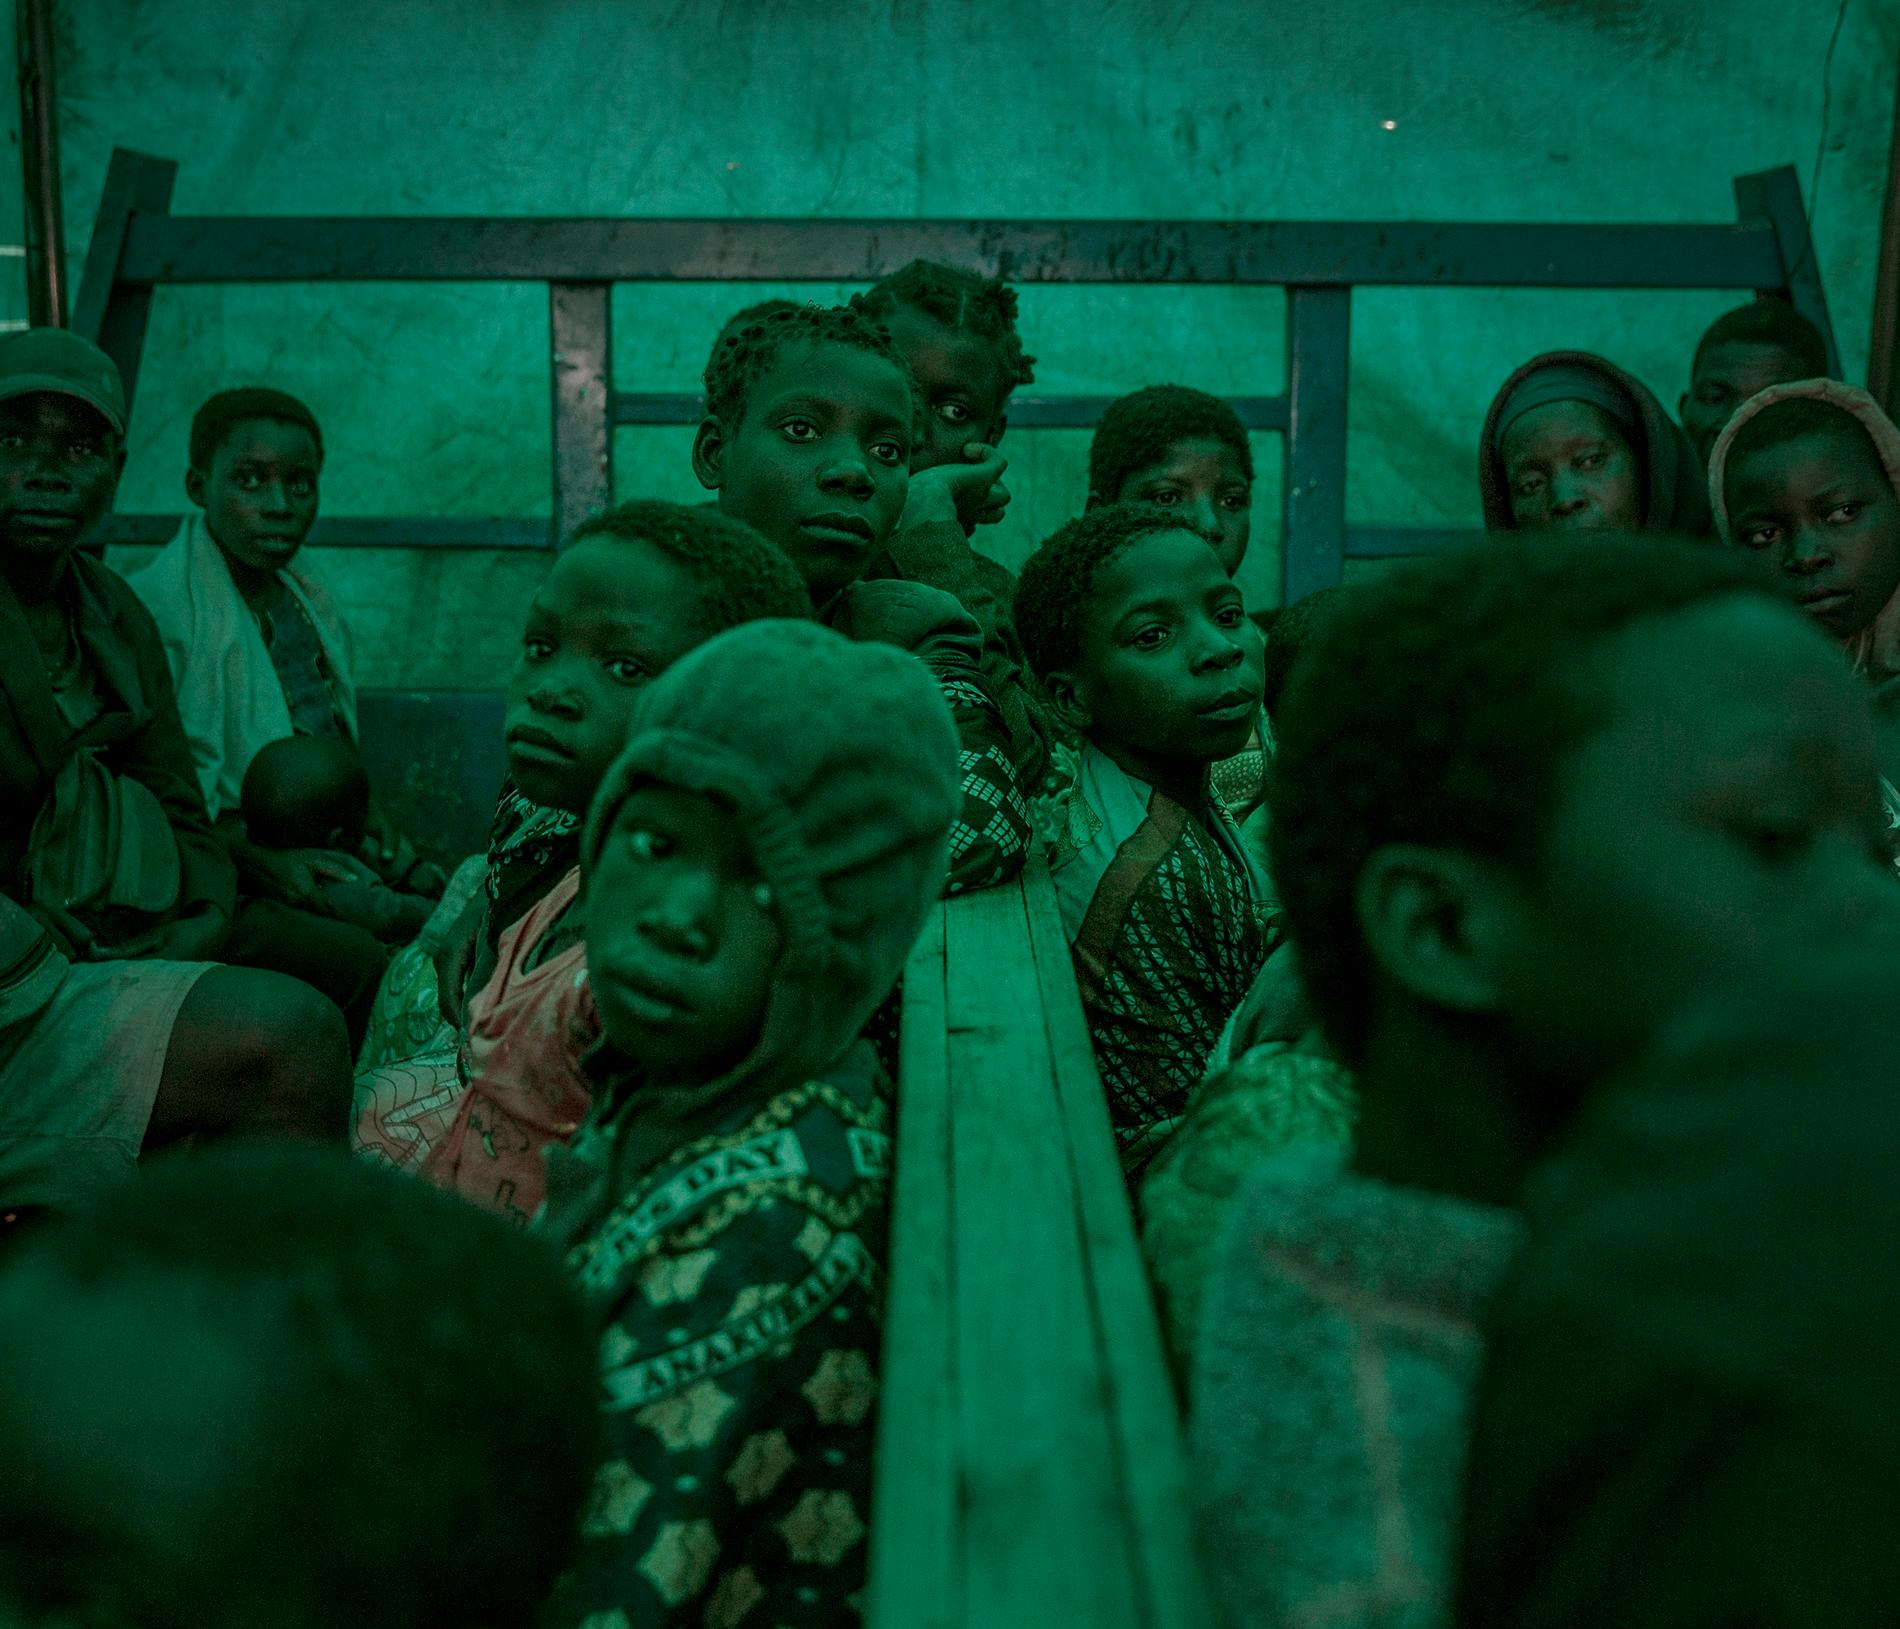 Årets fotograf 2017, Magnus Wennman. Flyktingar evakueras i lastbilar från ett otillgängligt provisoriskt flyktingläger på gränsen till Moçambique, till ett av de större lägren längre in i Malawi.